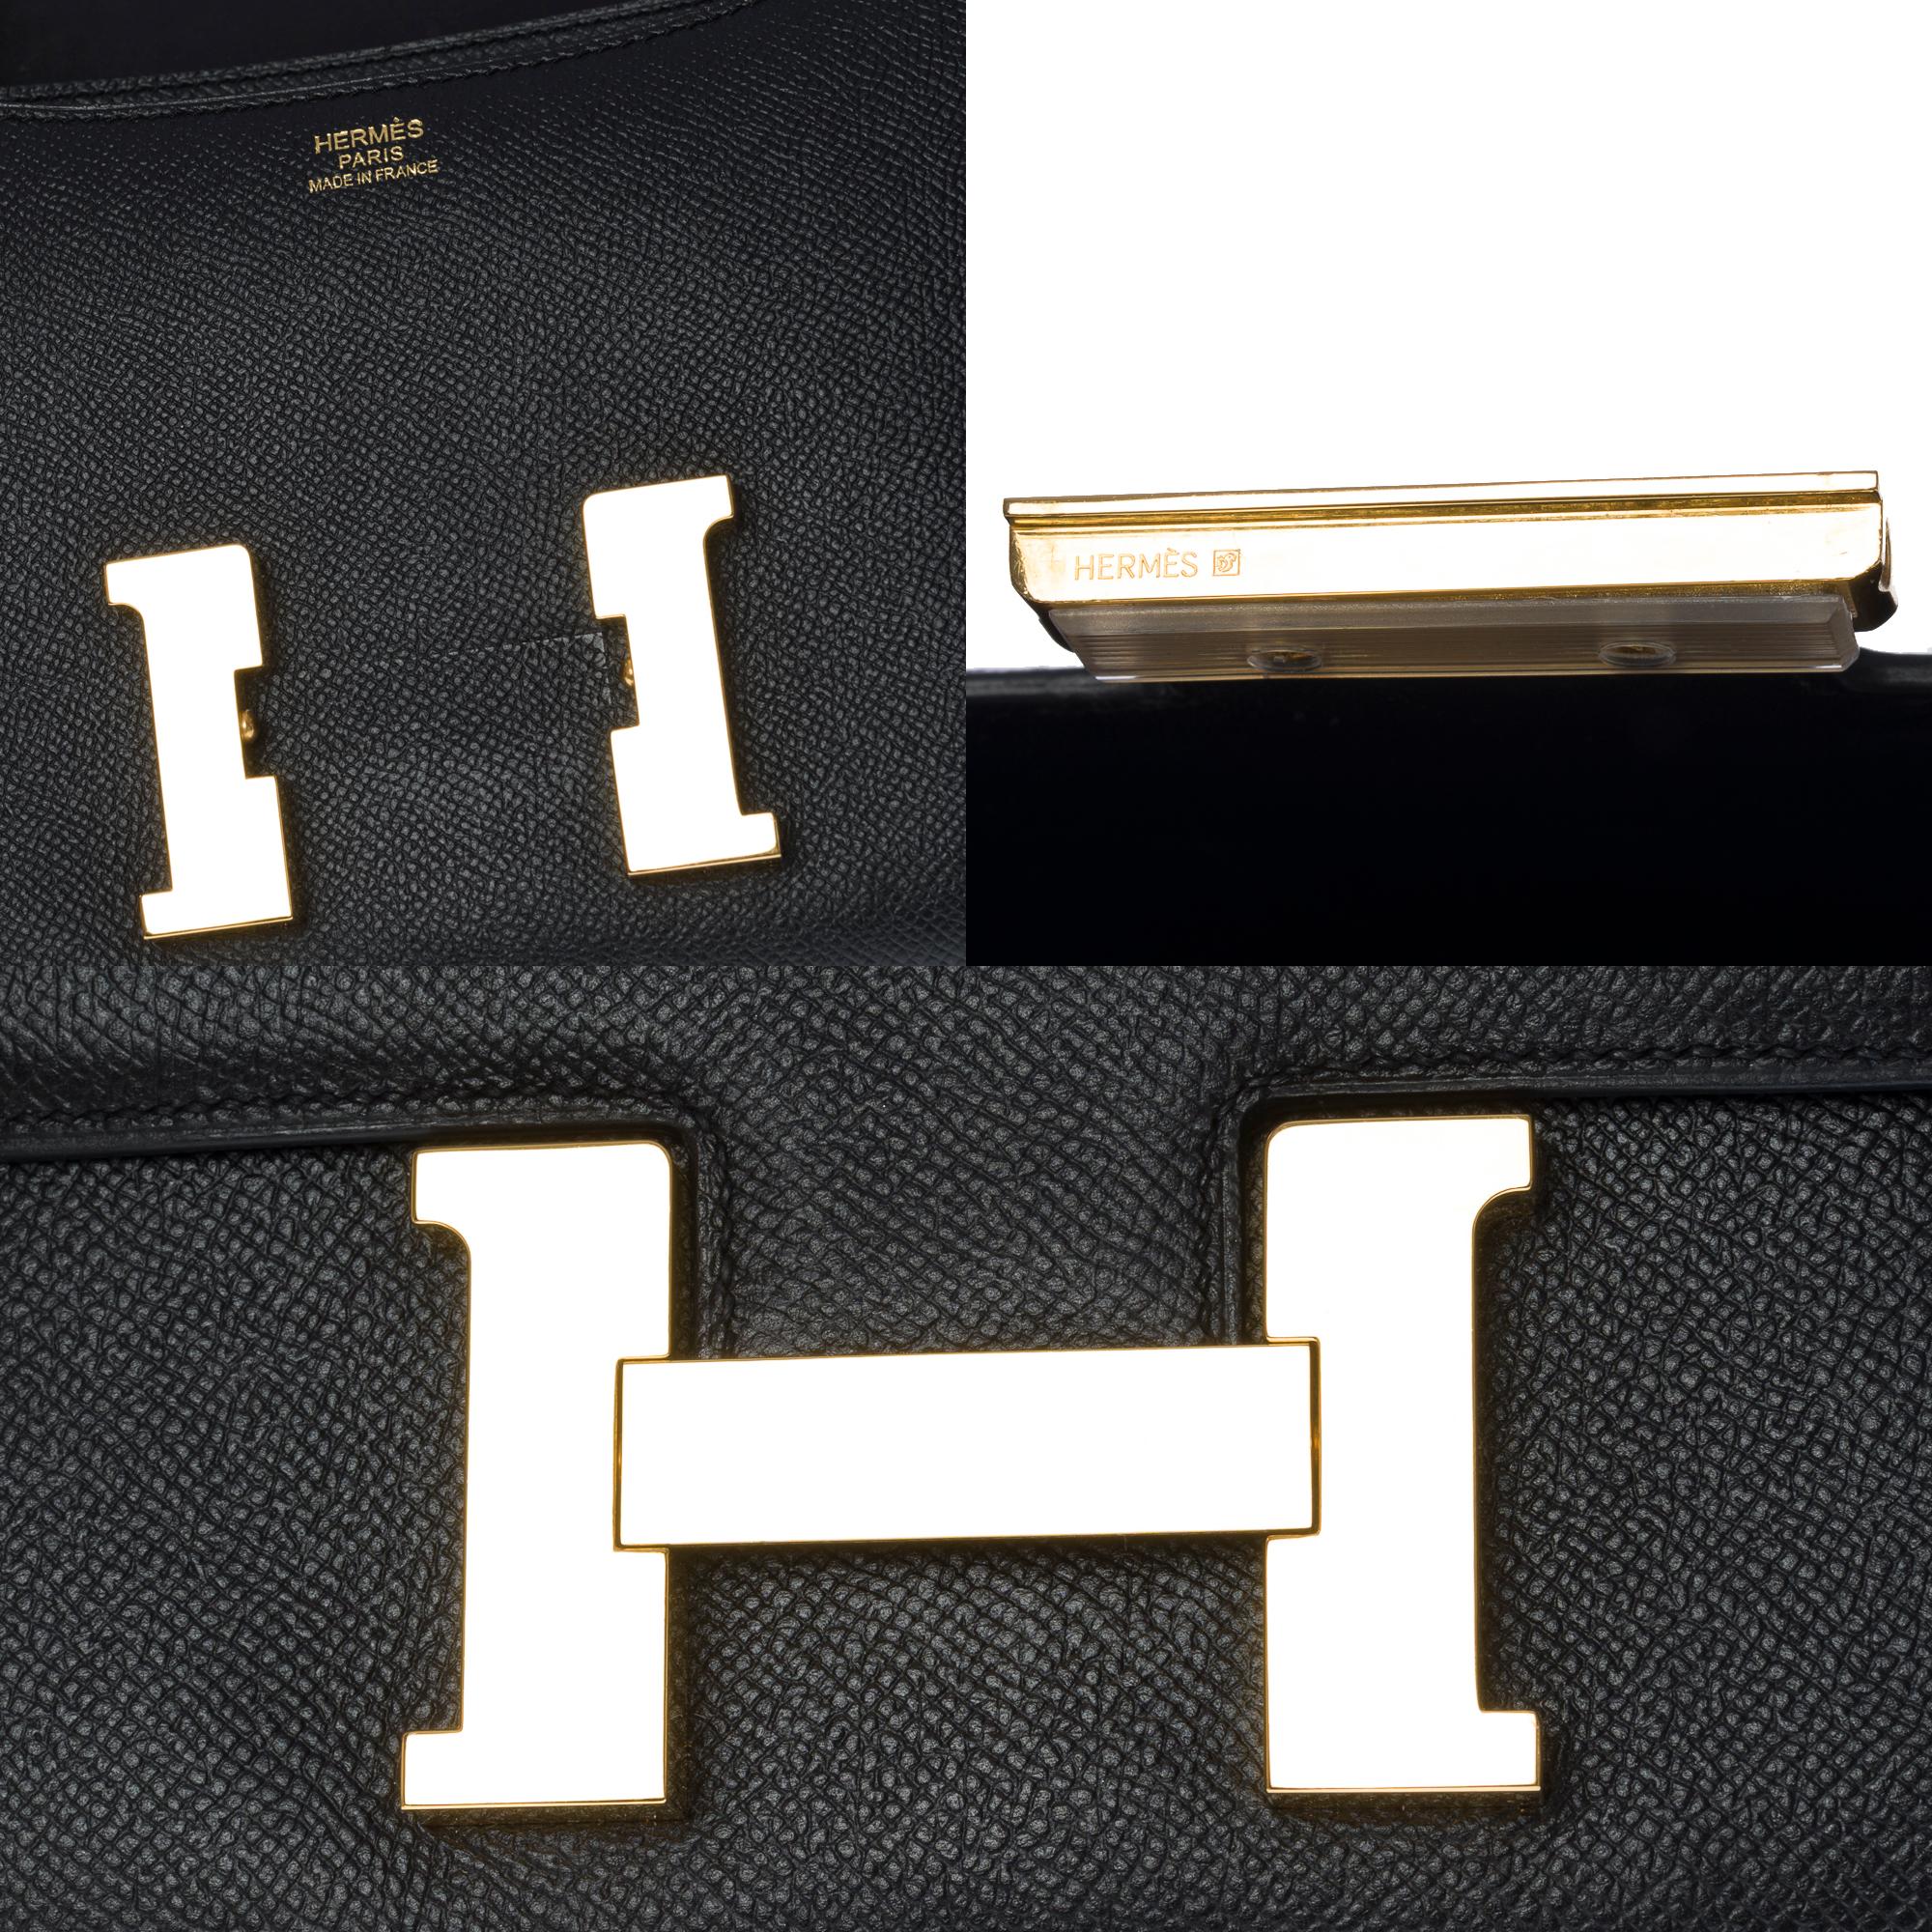 Gorgeous Hermès Constance shoulder bag in black epsom leather , GHW 2